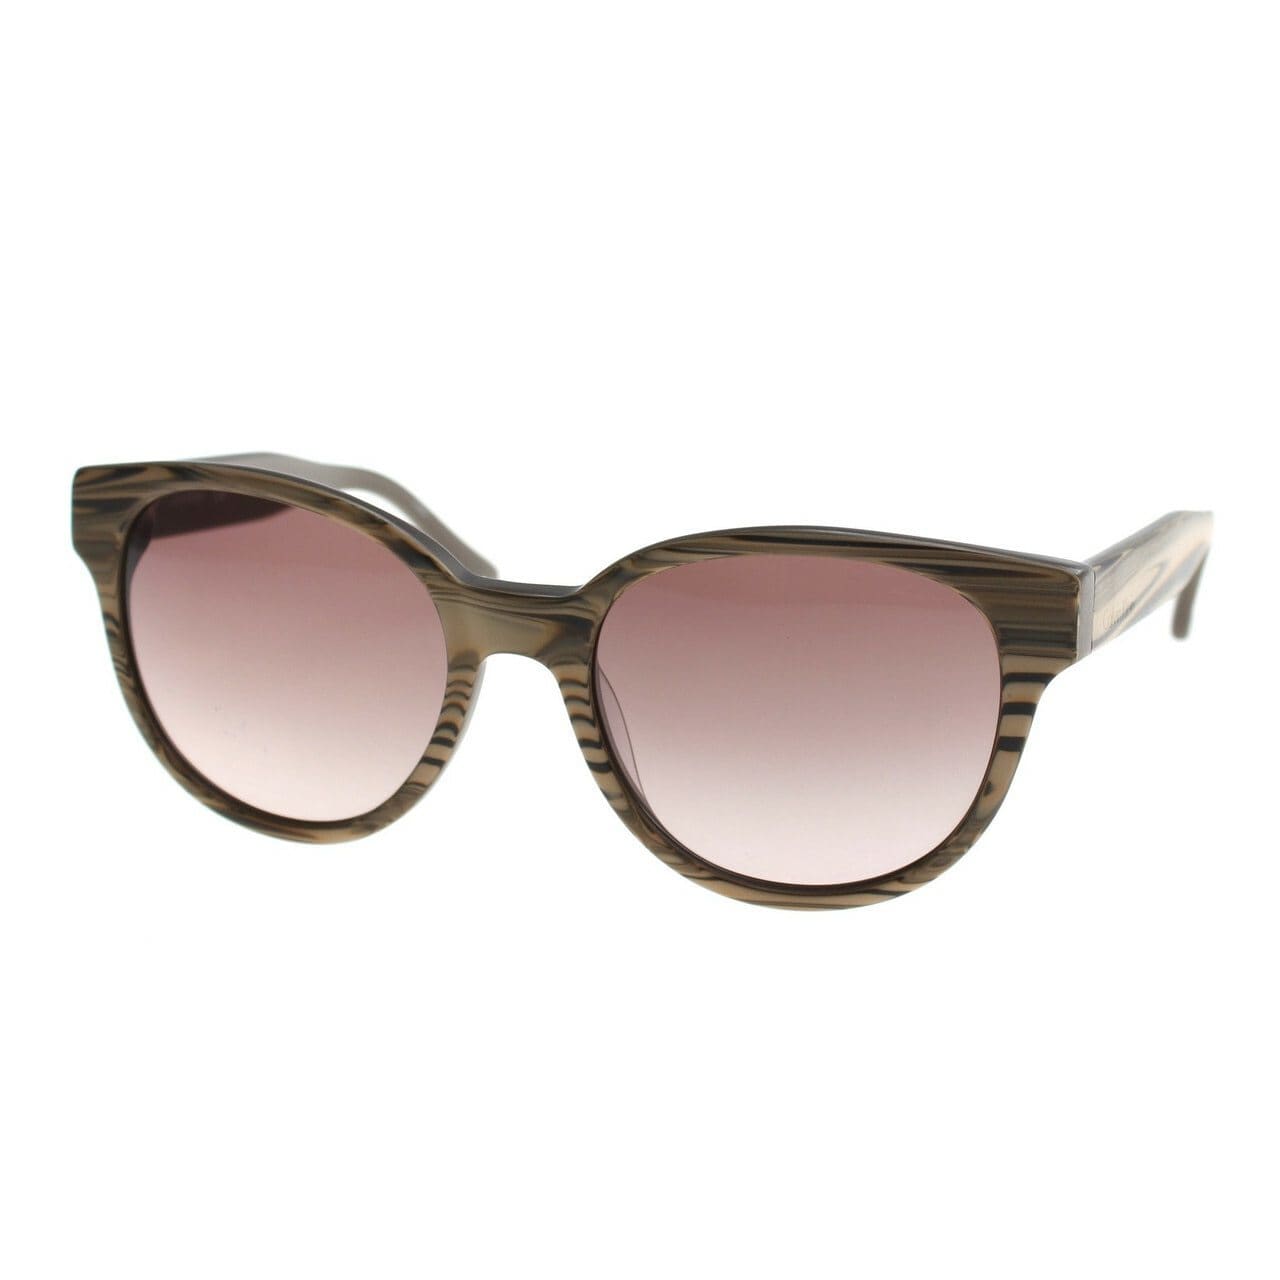 Calvin Klein CK4289S-282 CK Suns Beige Wood Round Sunglasses Frames 750779087459